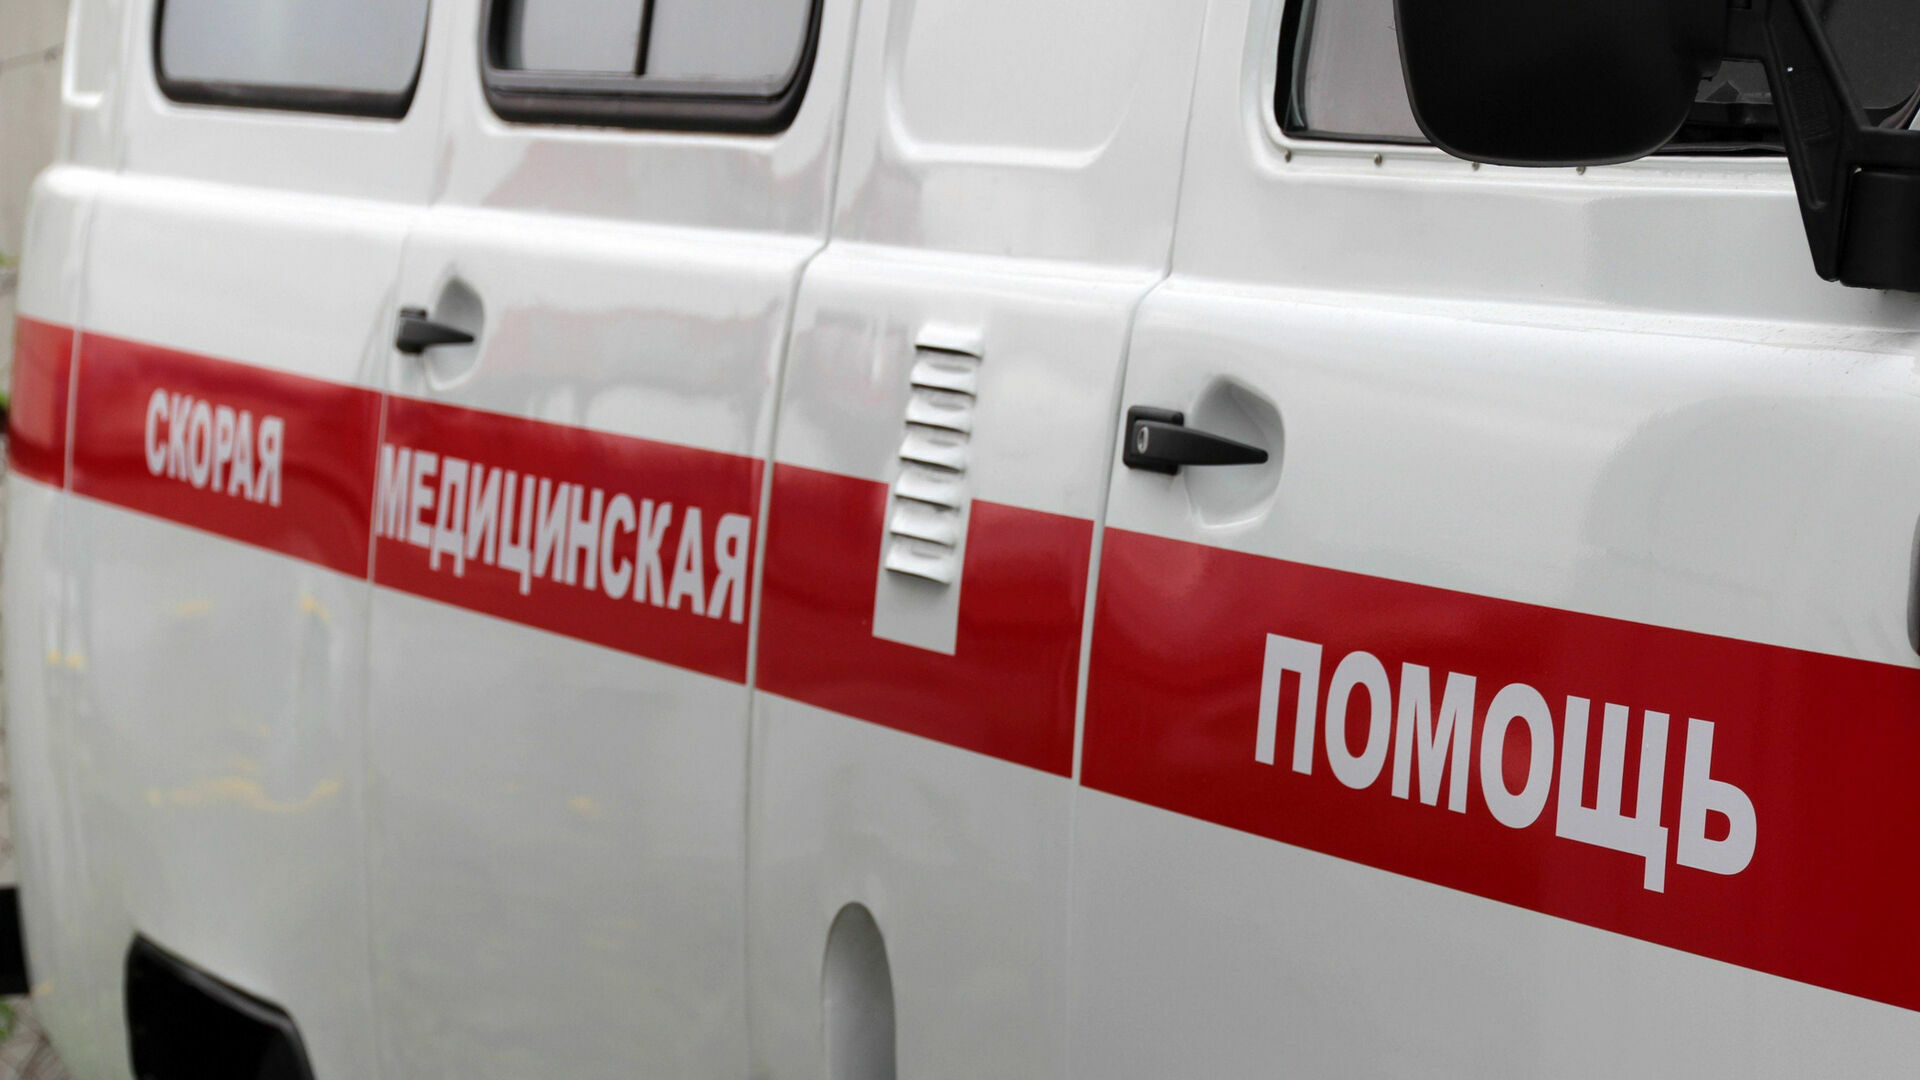 5-летняя девочка выпала из окна многоэтажки в Нижнем Новгороде